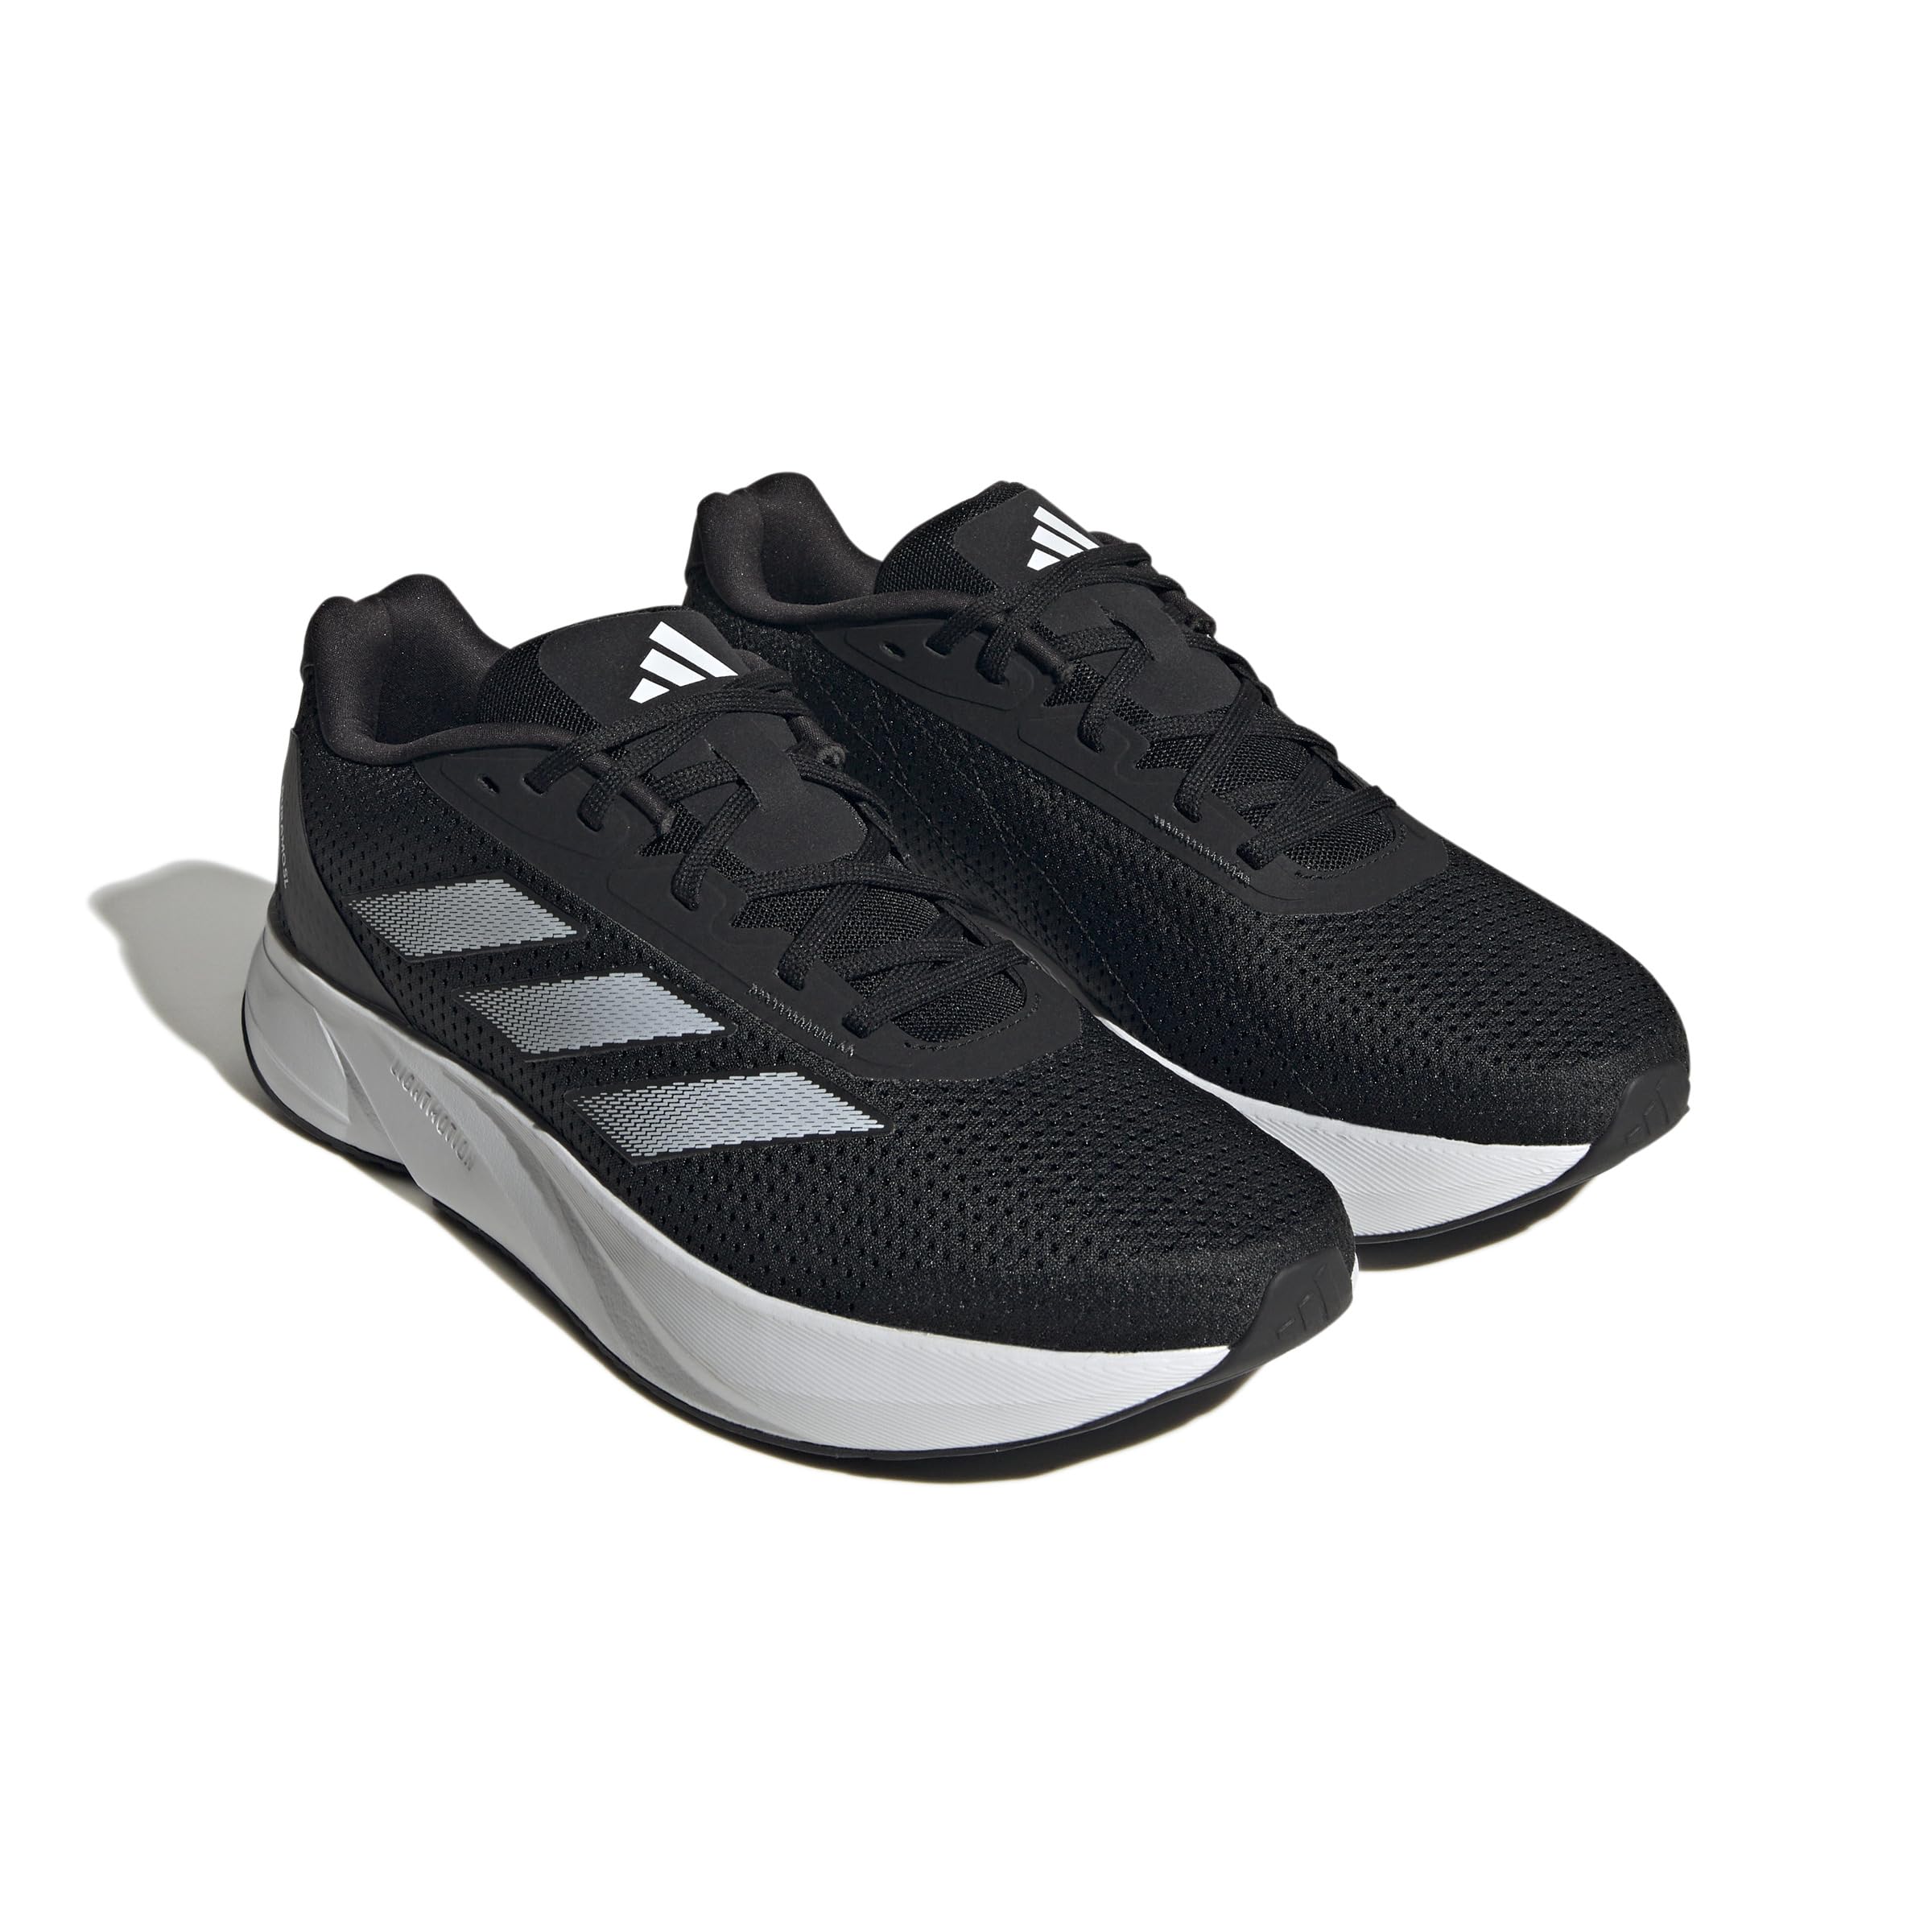 Беговые кроссовки Duramo SL от Adidas для мужчин Adidas